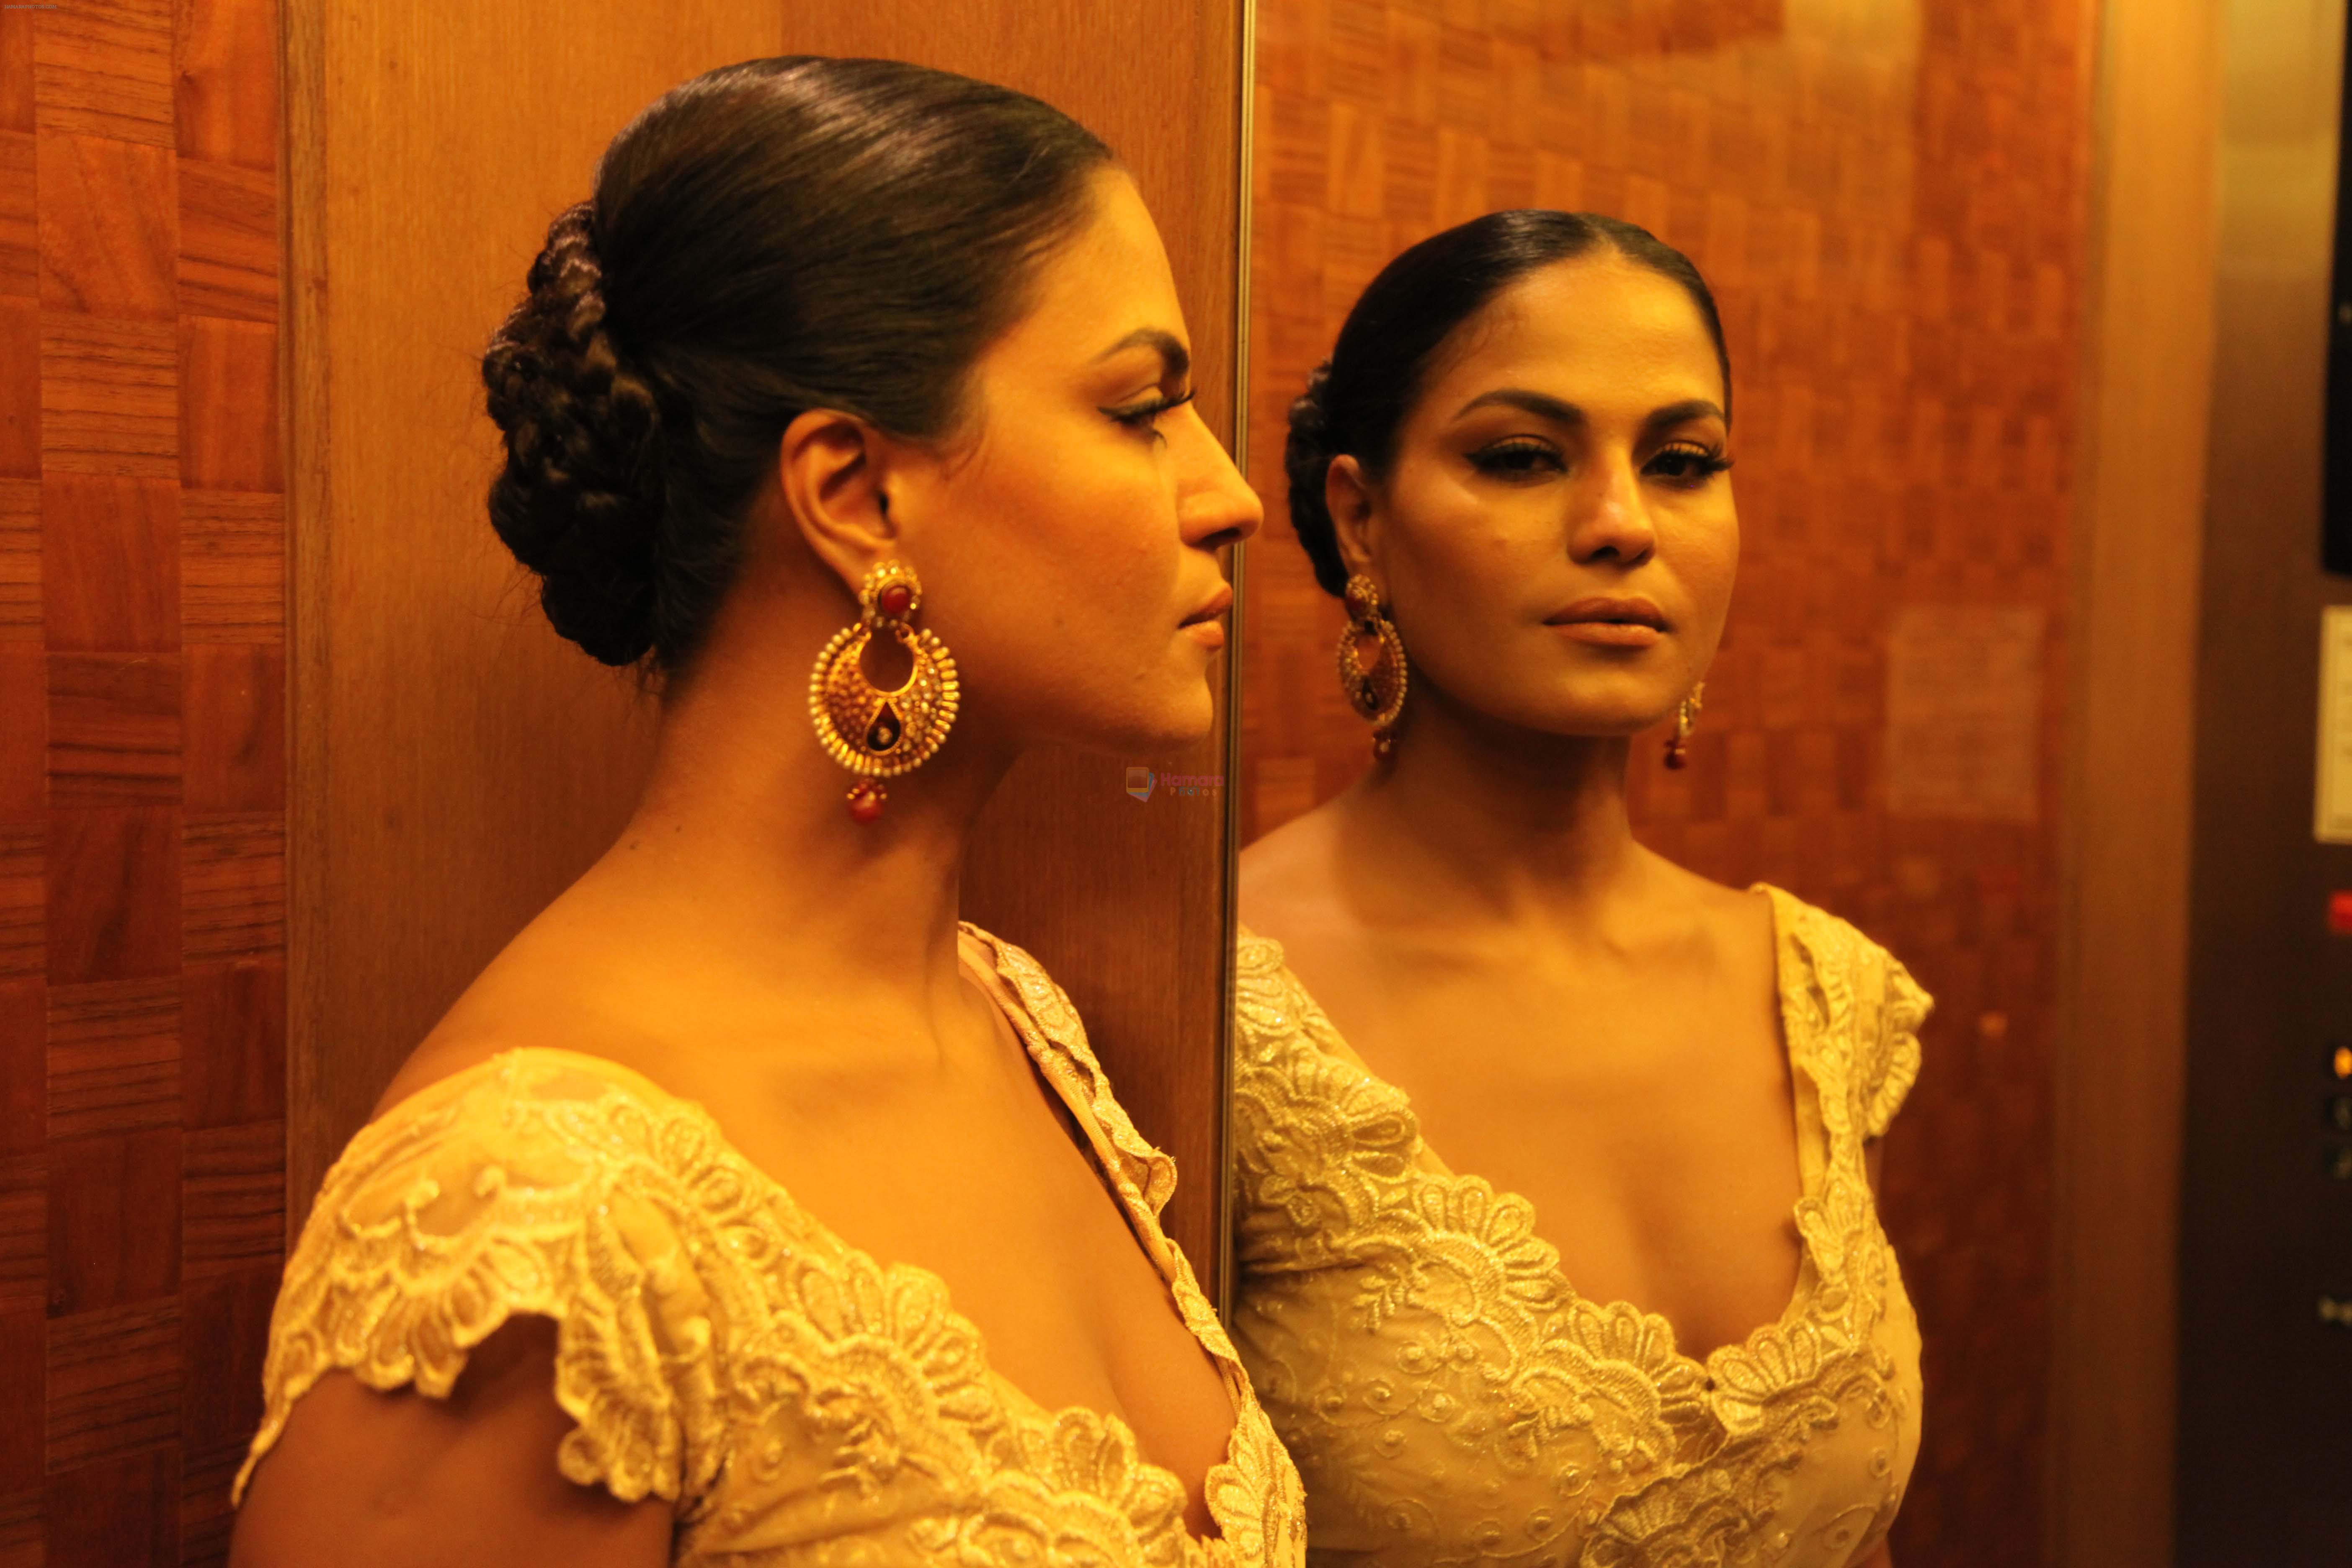 Veena Malik Silk Sakkath Hot Maga release on August 2 on 30th July 2013